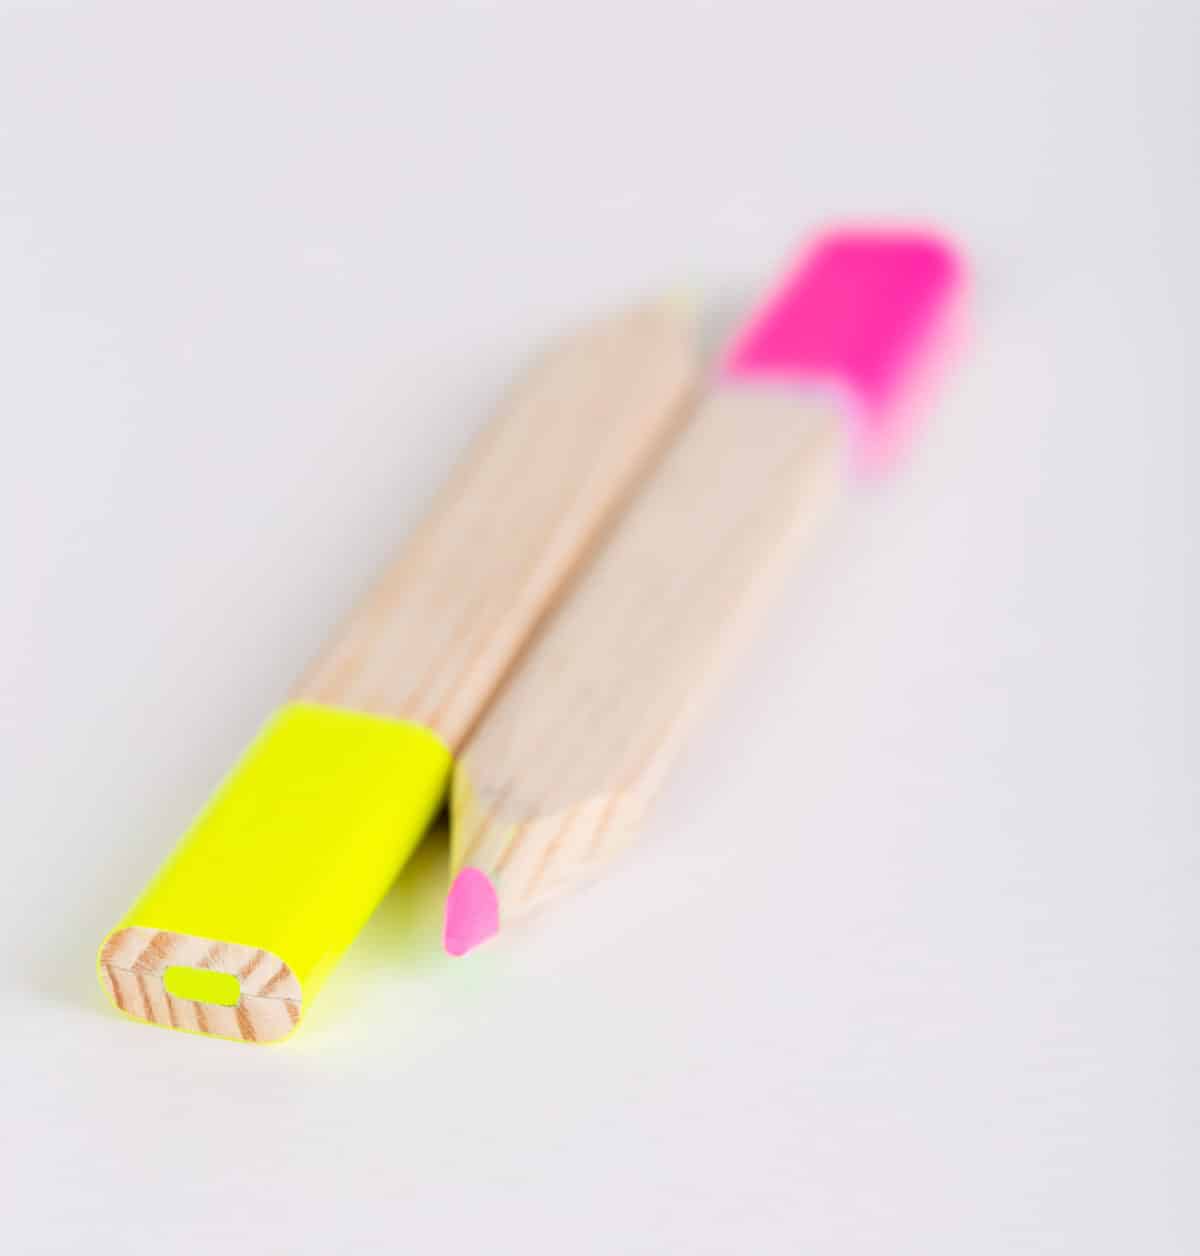 surligneur crayon en bois français, personnalisable gravure laser ou marquage à chaud